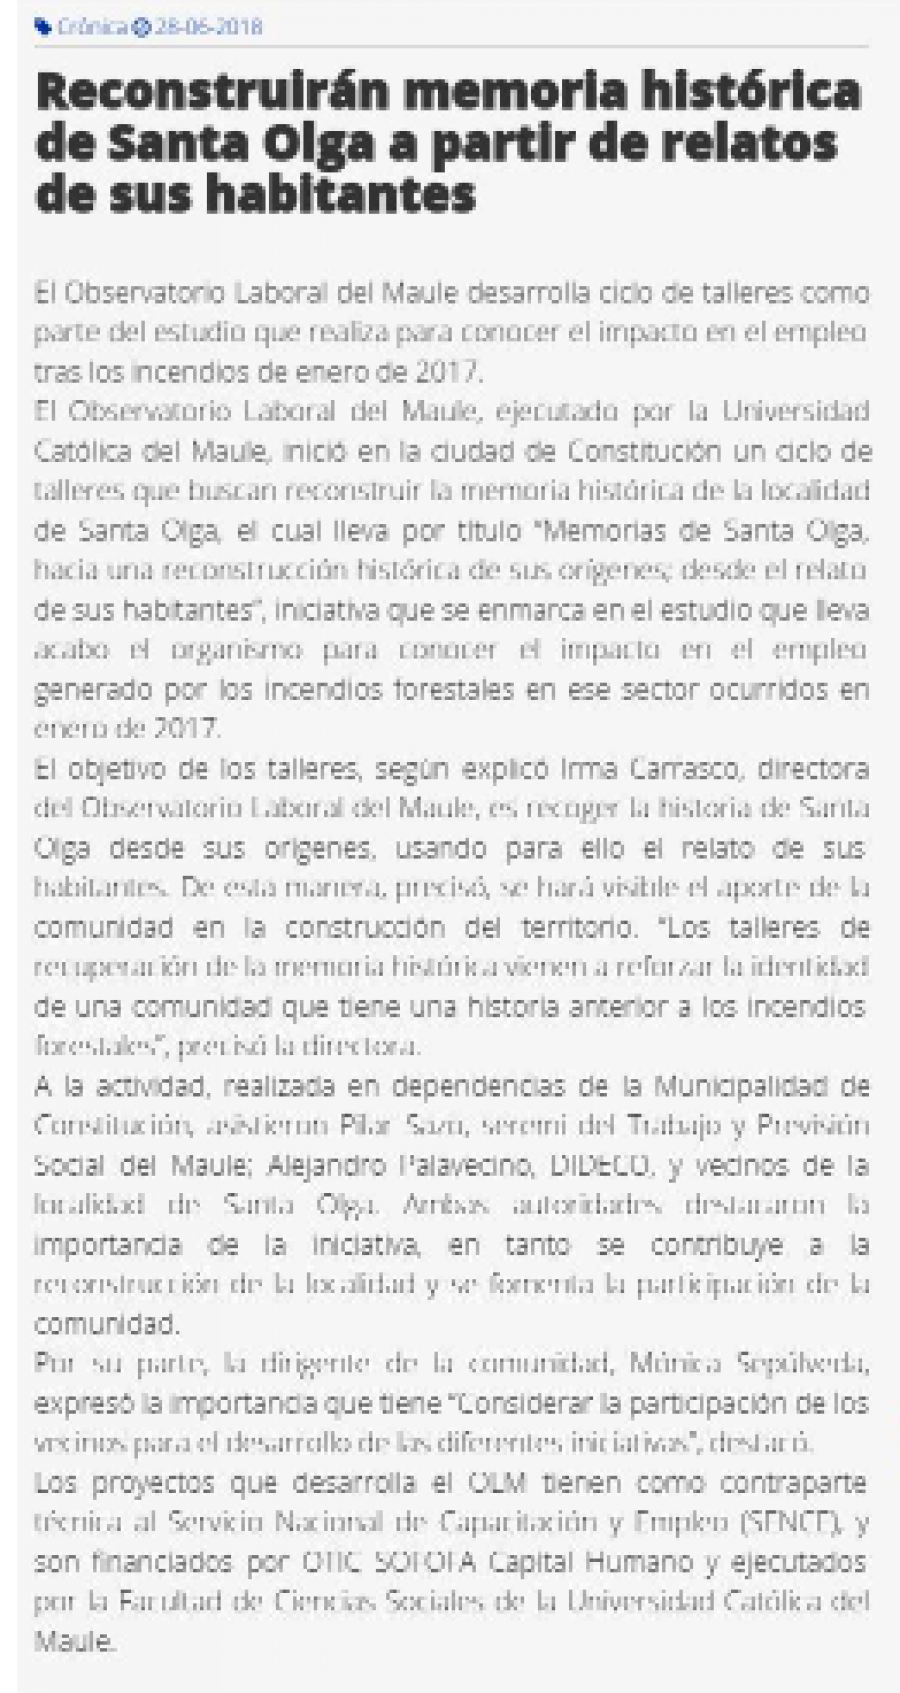 28 de junio en Diario El Heraldo: “Reconstruirán memoria histórica de Santa Olga a partir de relatos de sus habitantes”